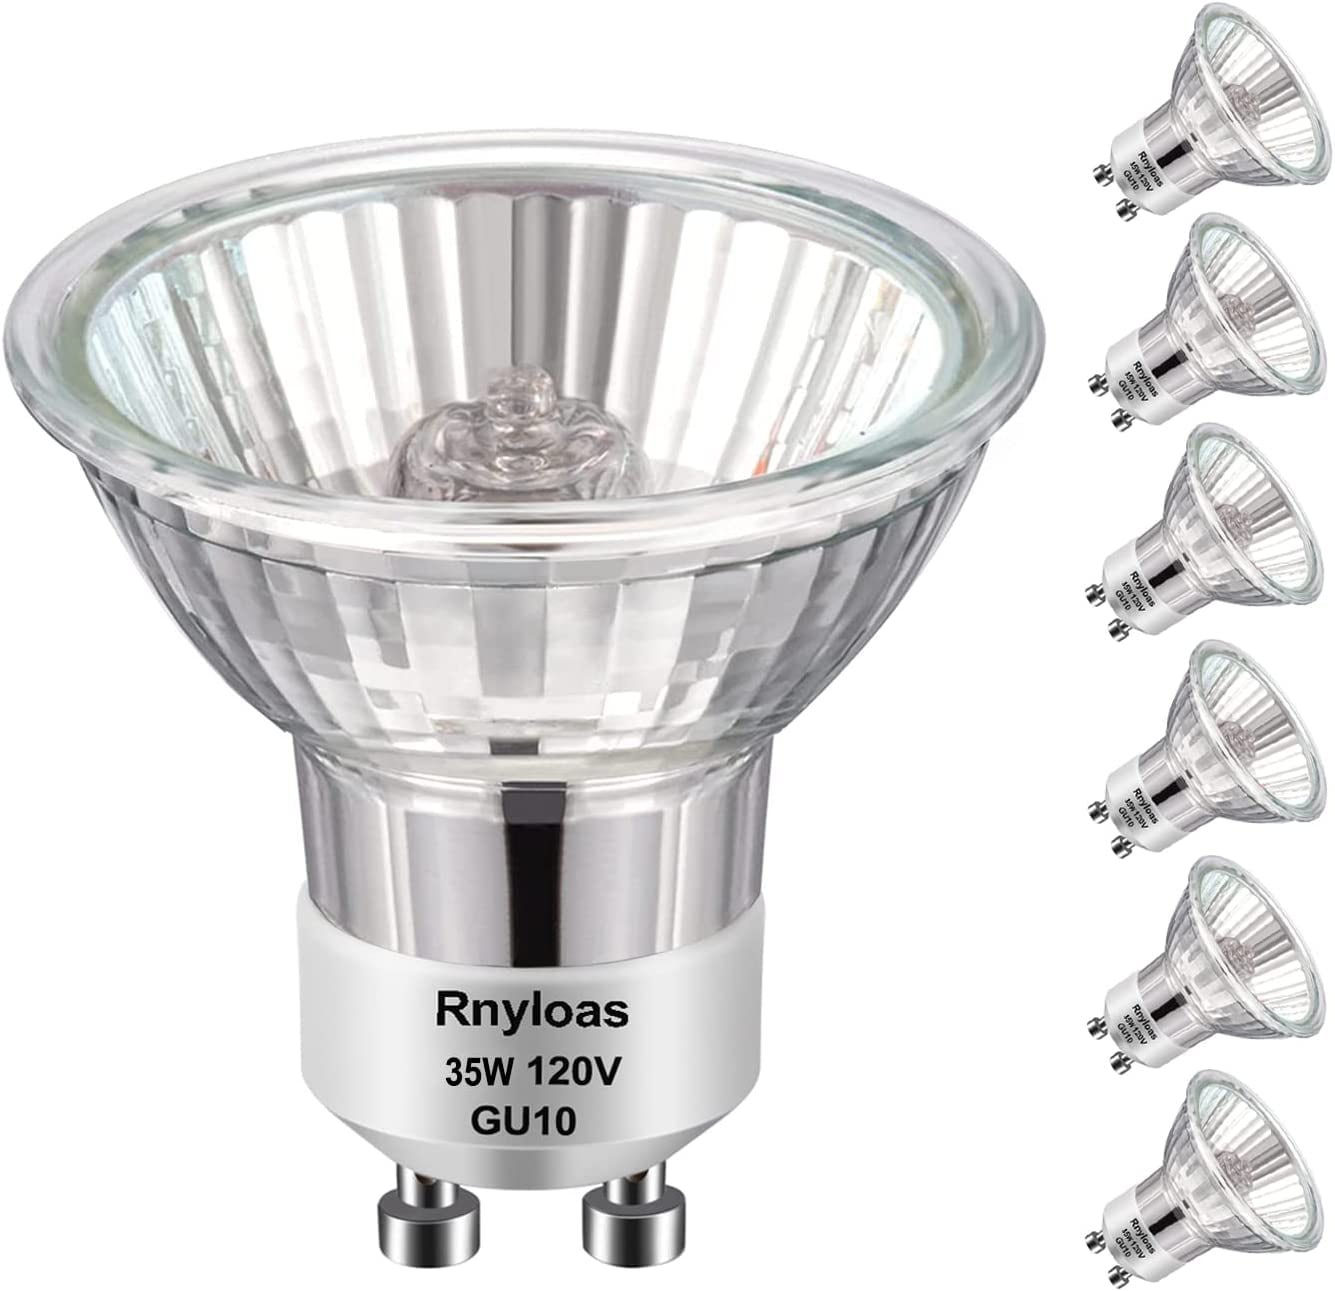 Ampoule LED RefLED Sylvania ⌀50 mm 6,2W 450LM 840 culot GU10